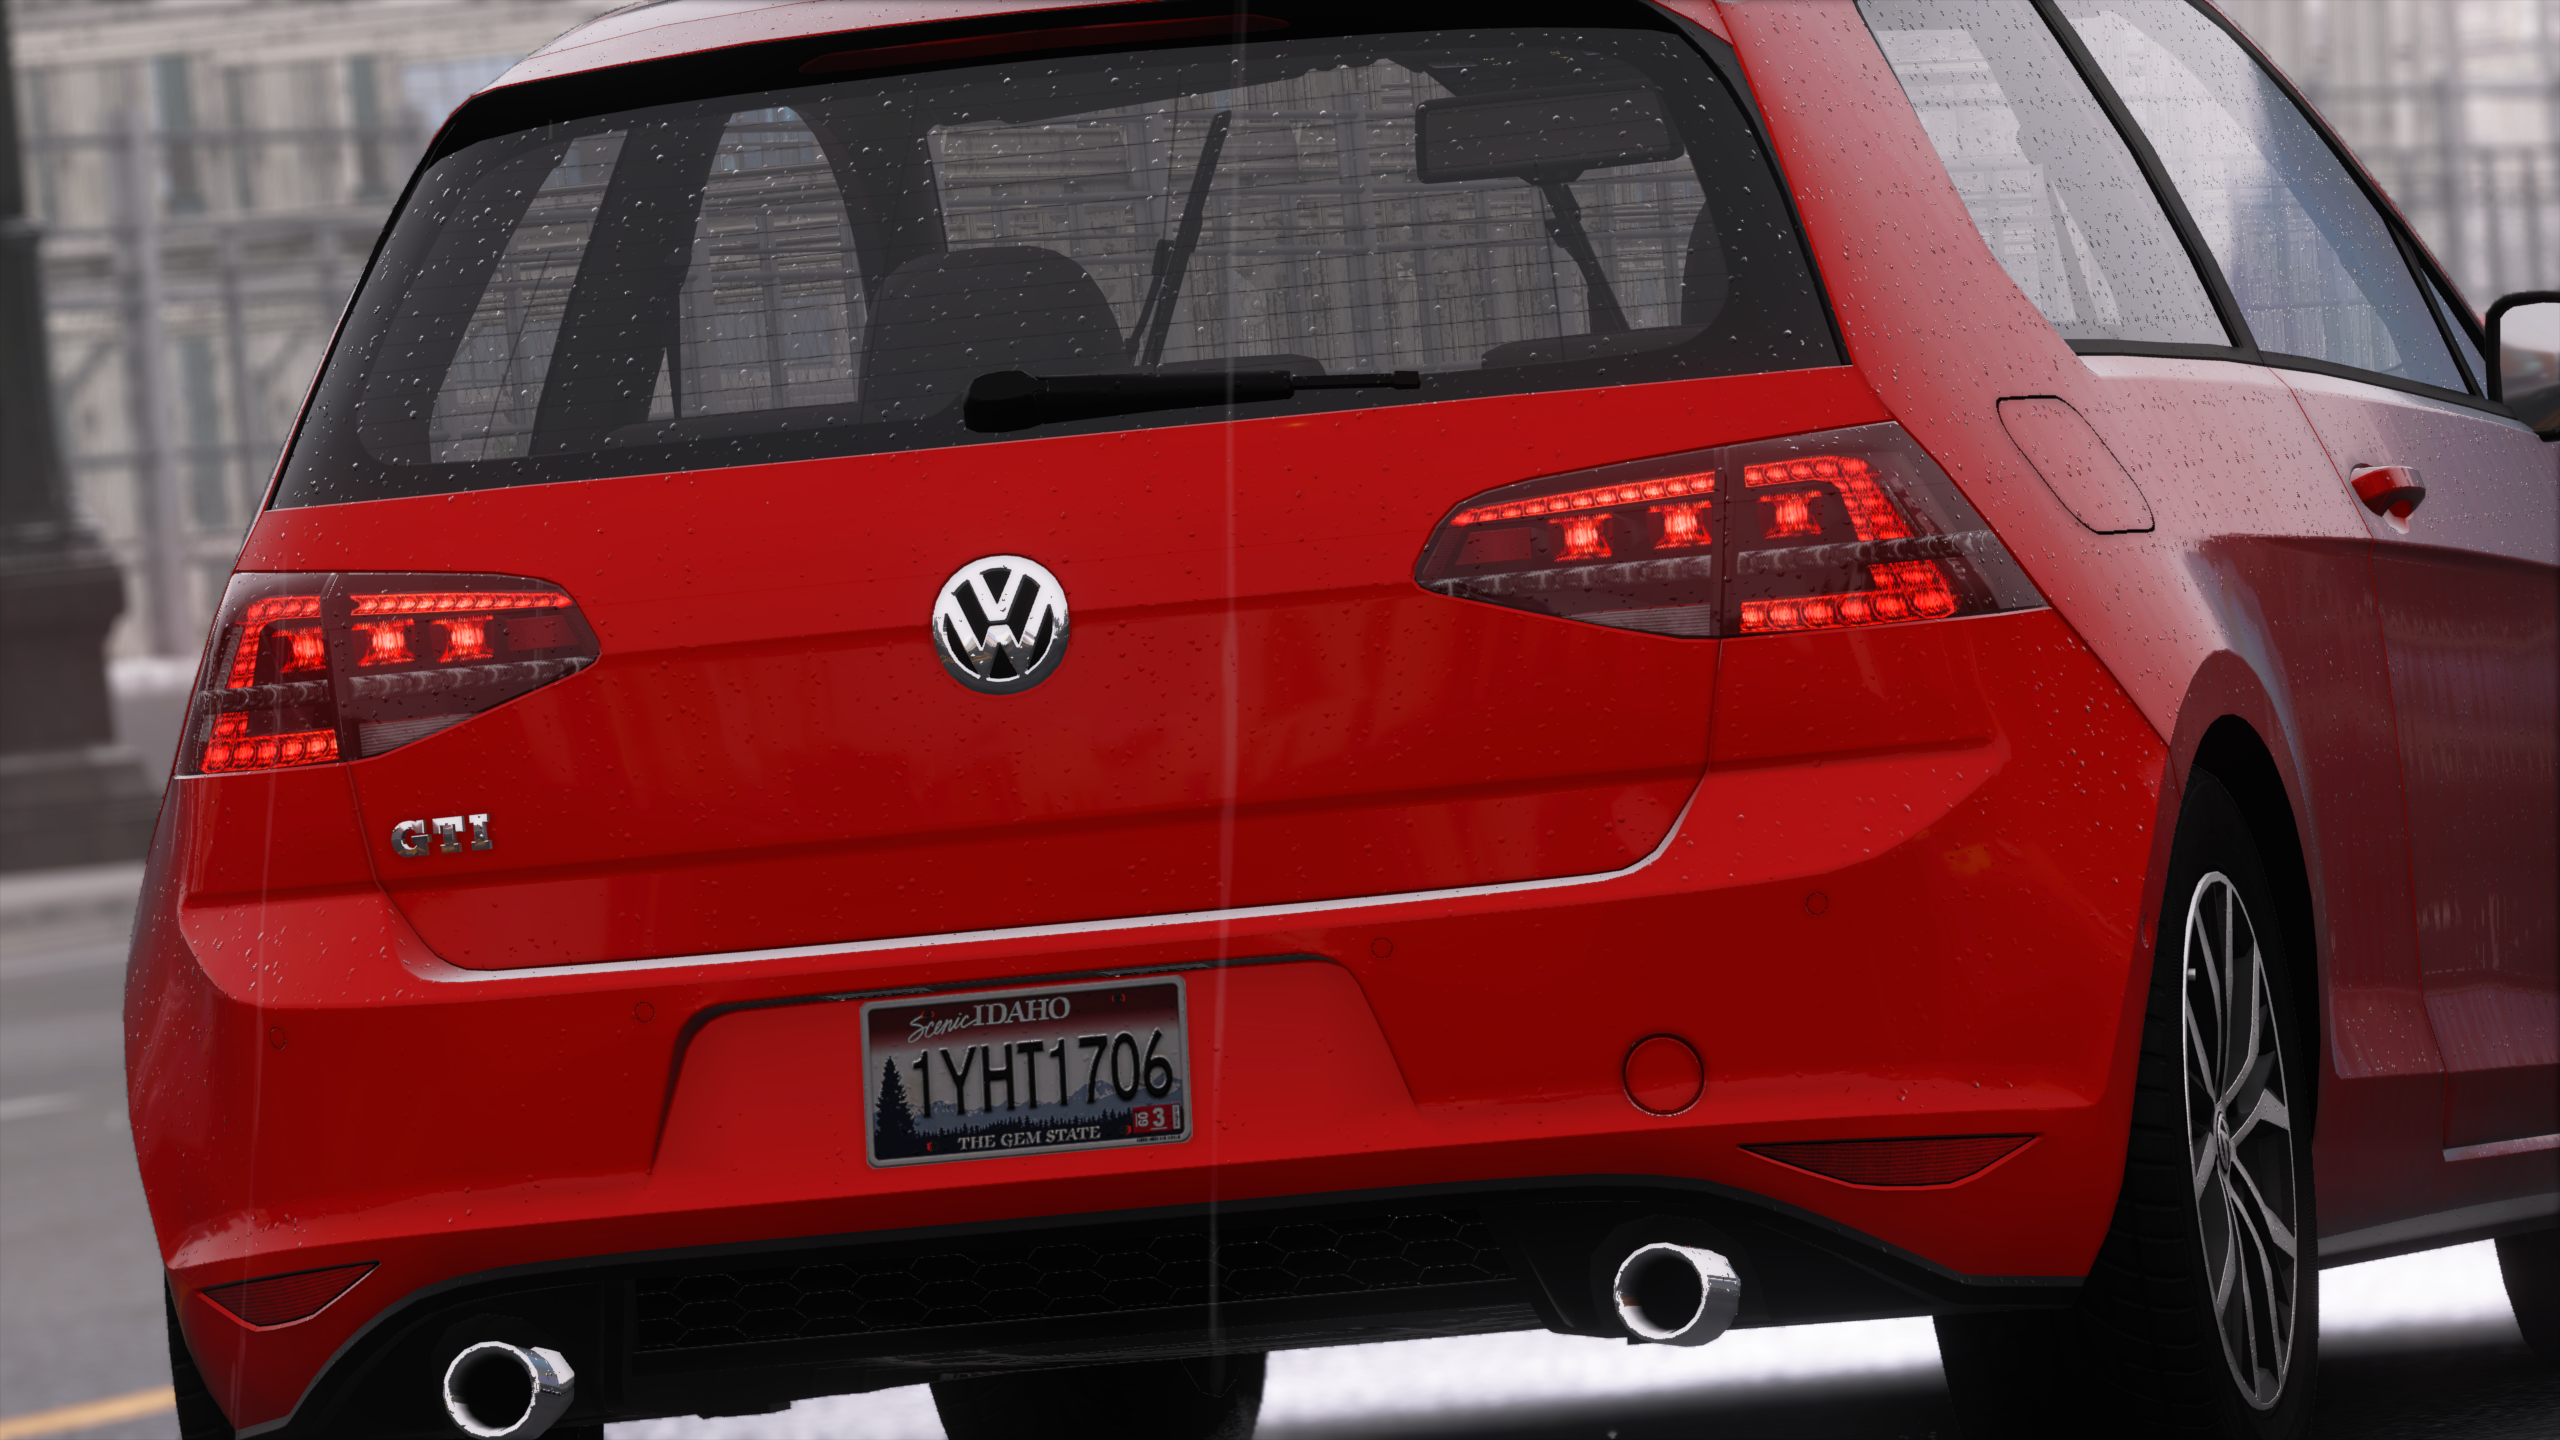 General 2560x1440 Volkswagen car red cars vehicle Volkswagen Golf VII video games The Crew screen shot Volkswagen Golf numbers